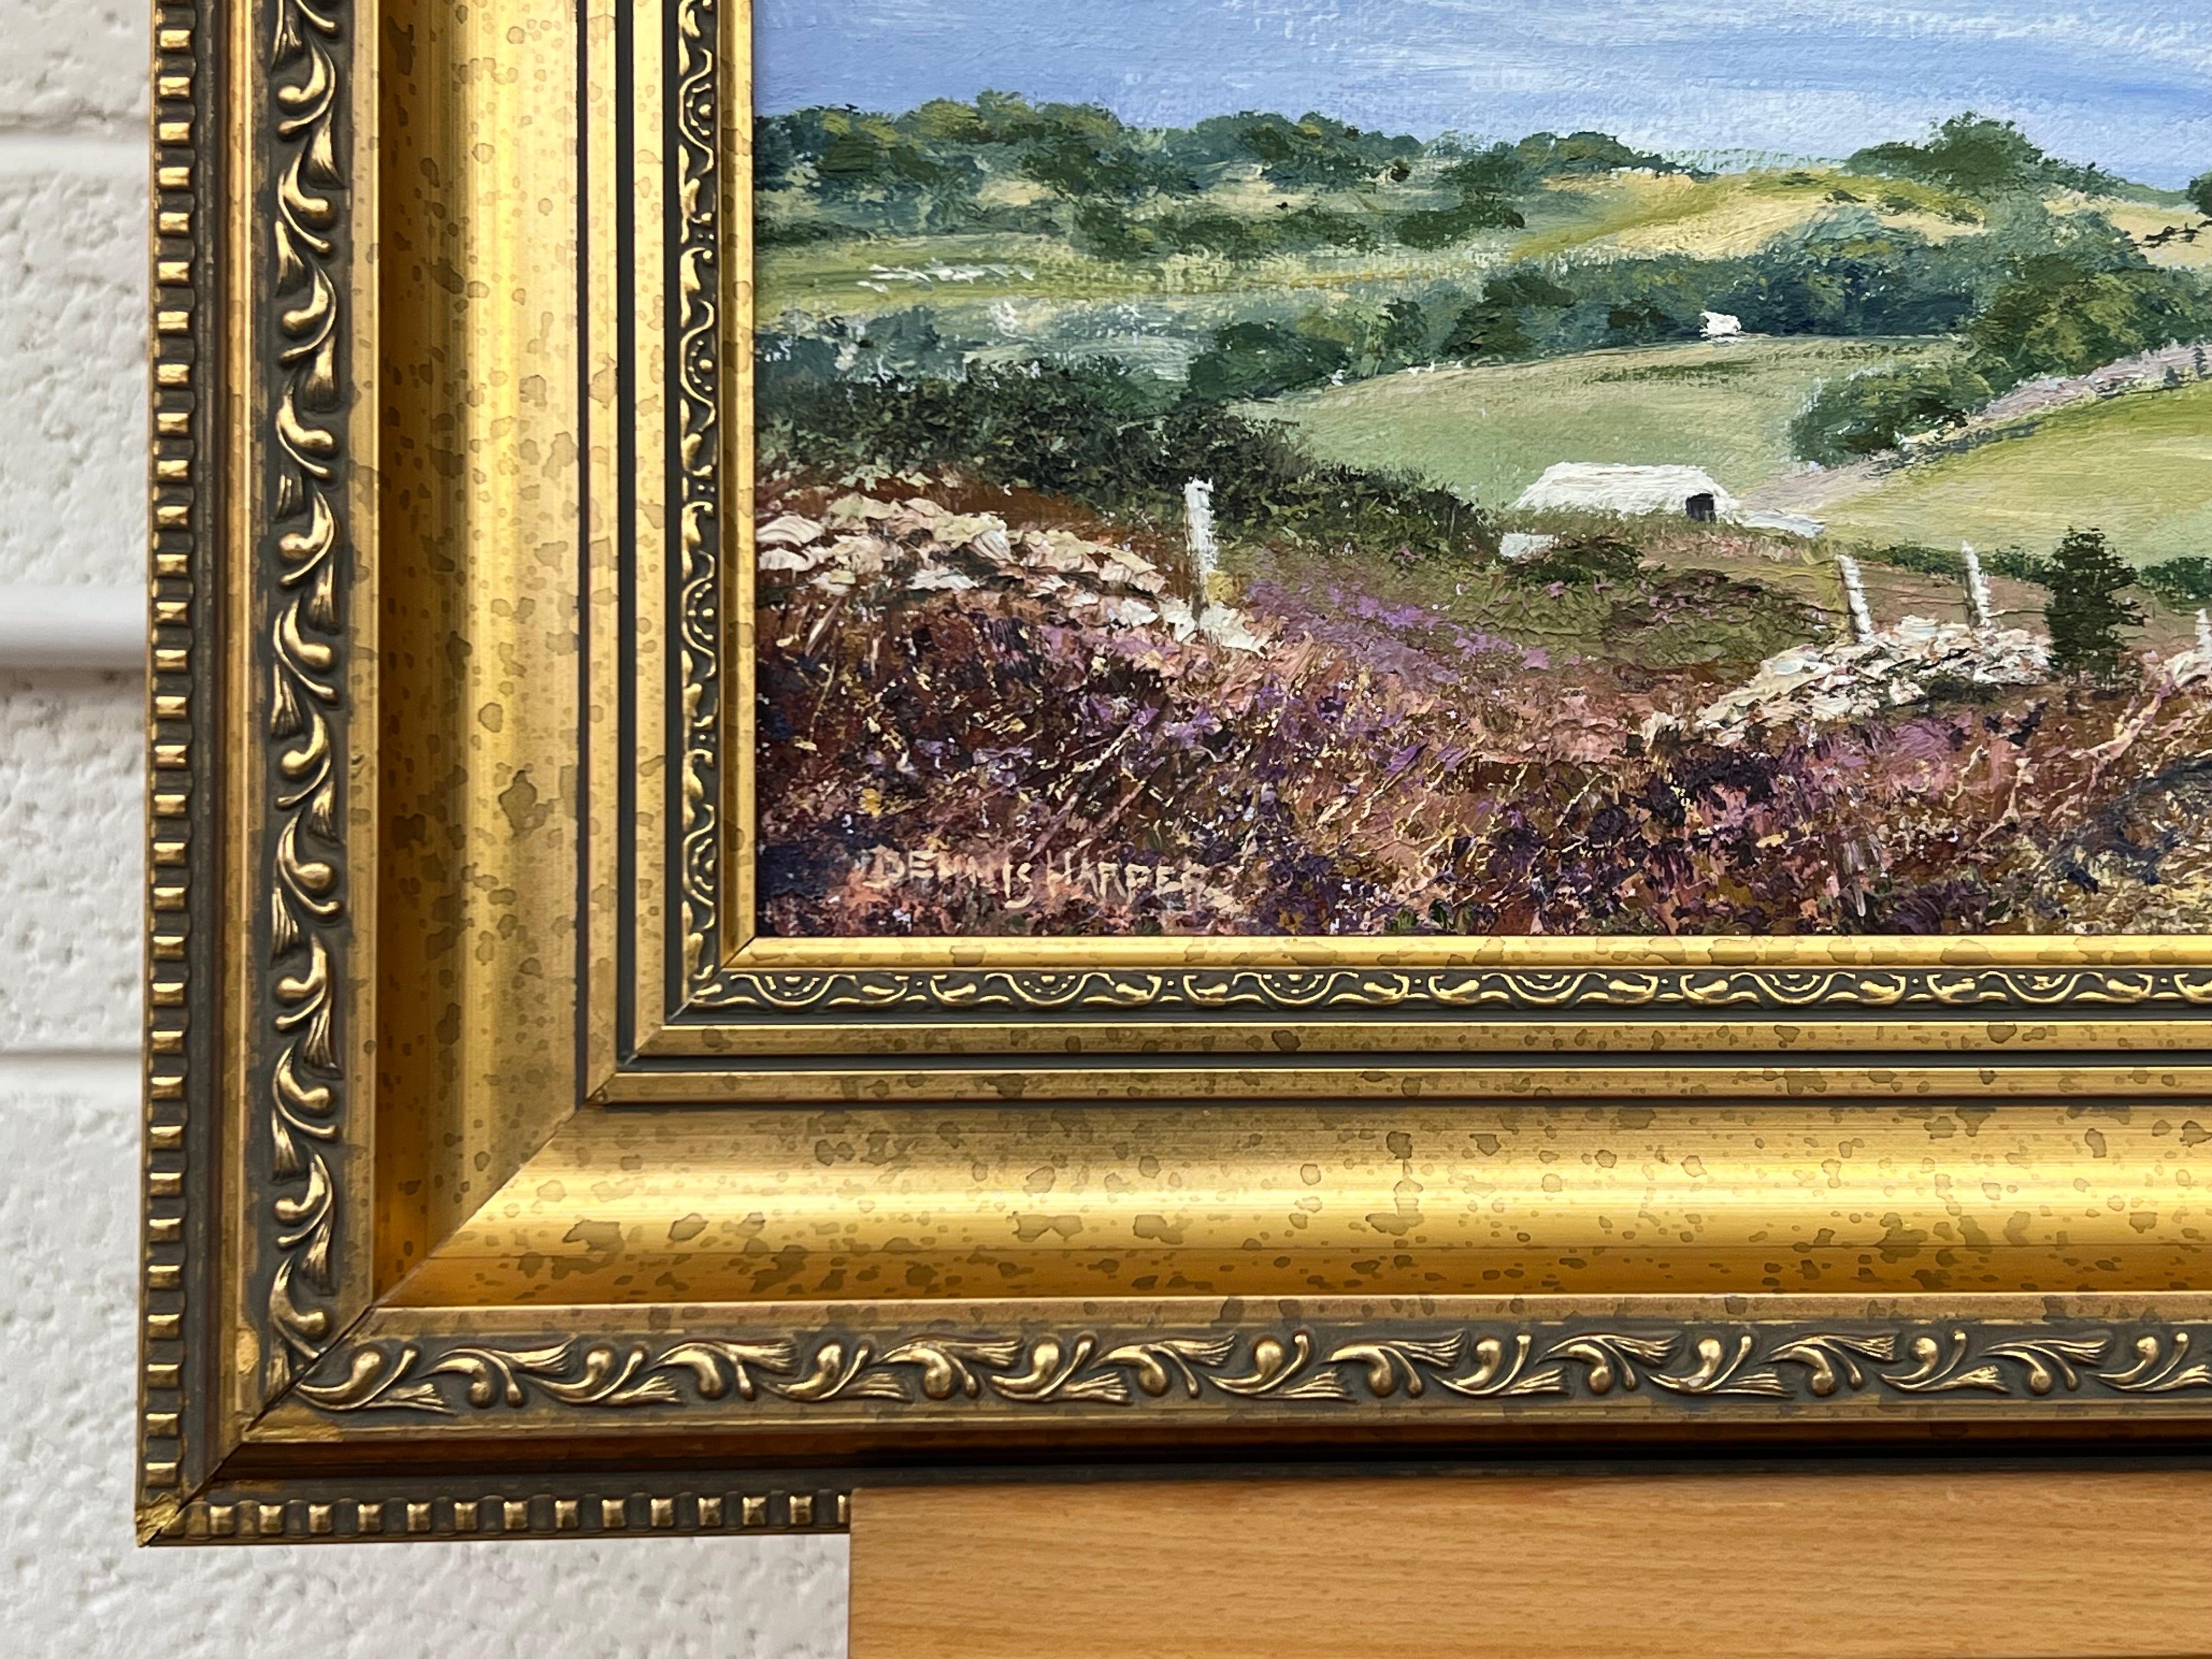 Ölgemälde der englischen Landschaft von Dennis Harper, ( geb. 1940) 
Der britische Künstler, der für seine realistischen Ölgemälde bekannt ist, ist aktives Mitglied in mehreren Kunstvereinen und hat im Vereinigten Königreich zahlreiche Ausstellungen